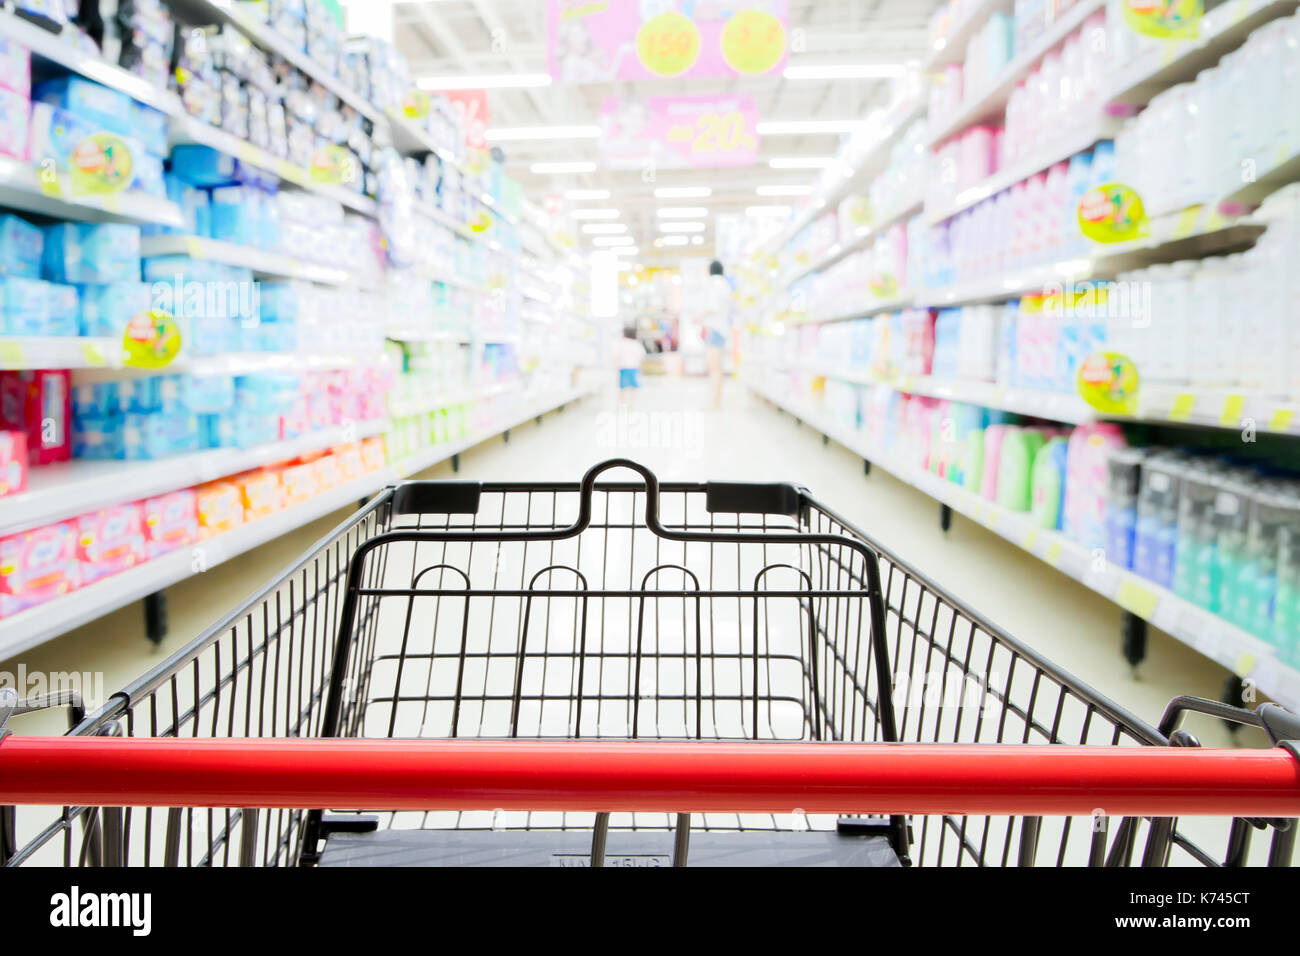 Panier en supermarché avec blured allée de supermarché et des étagères background Banque D'Images